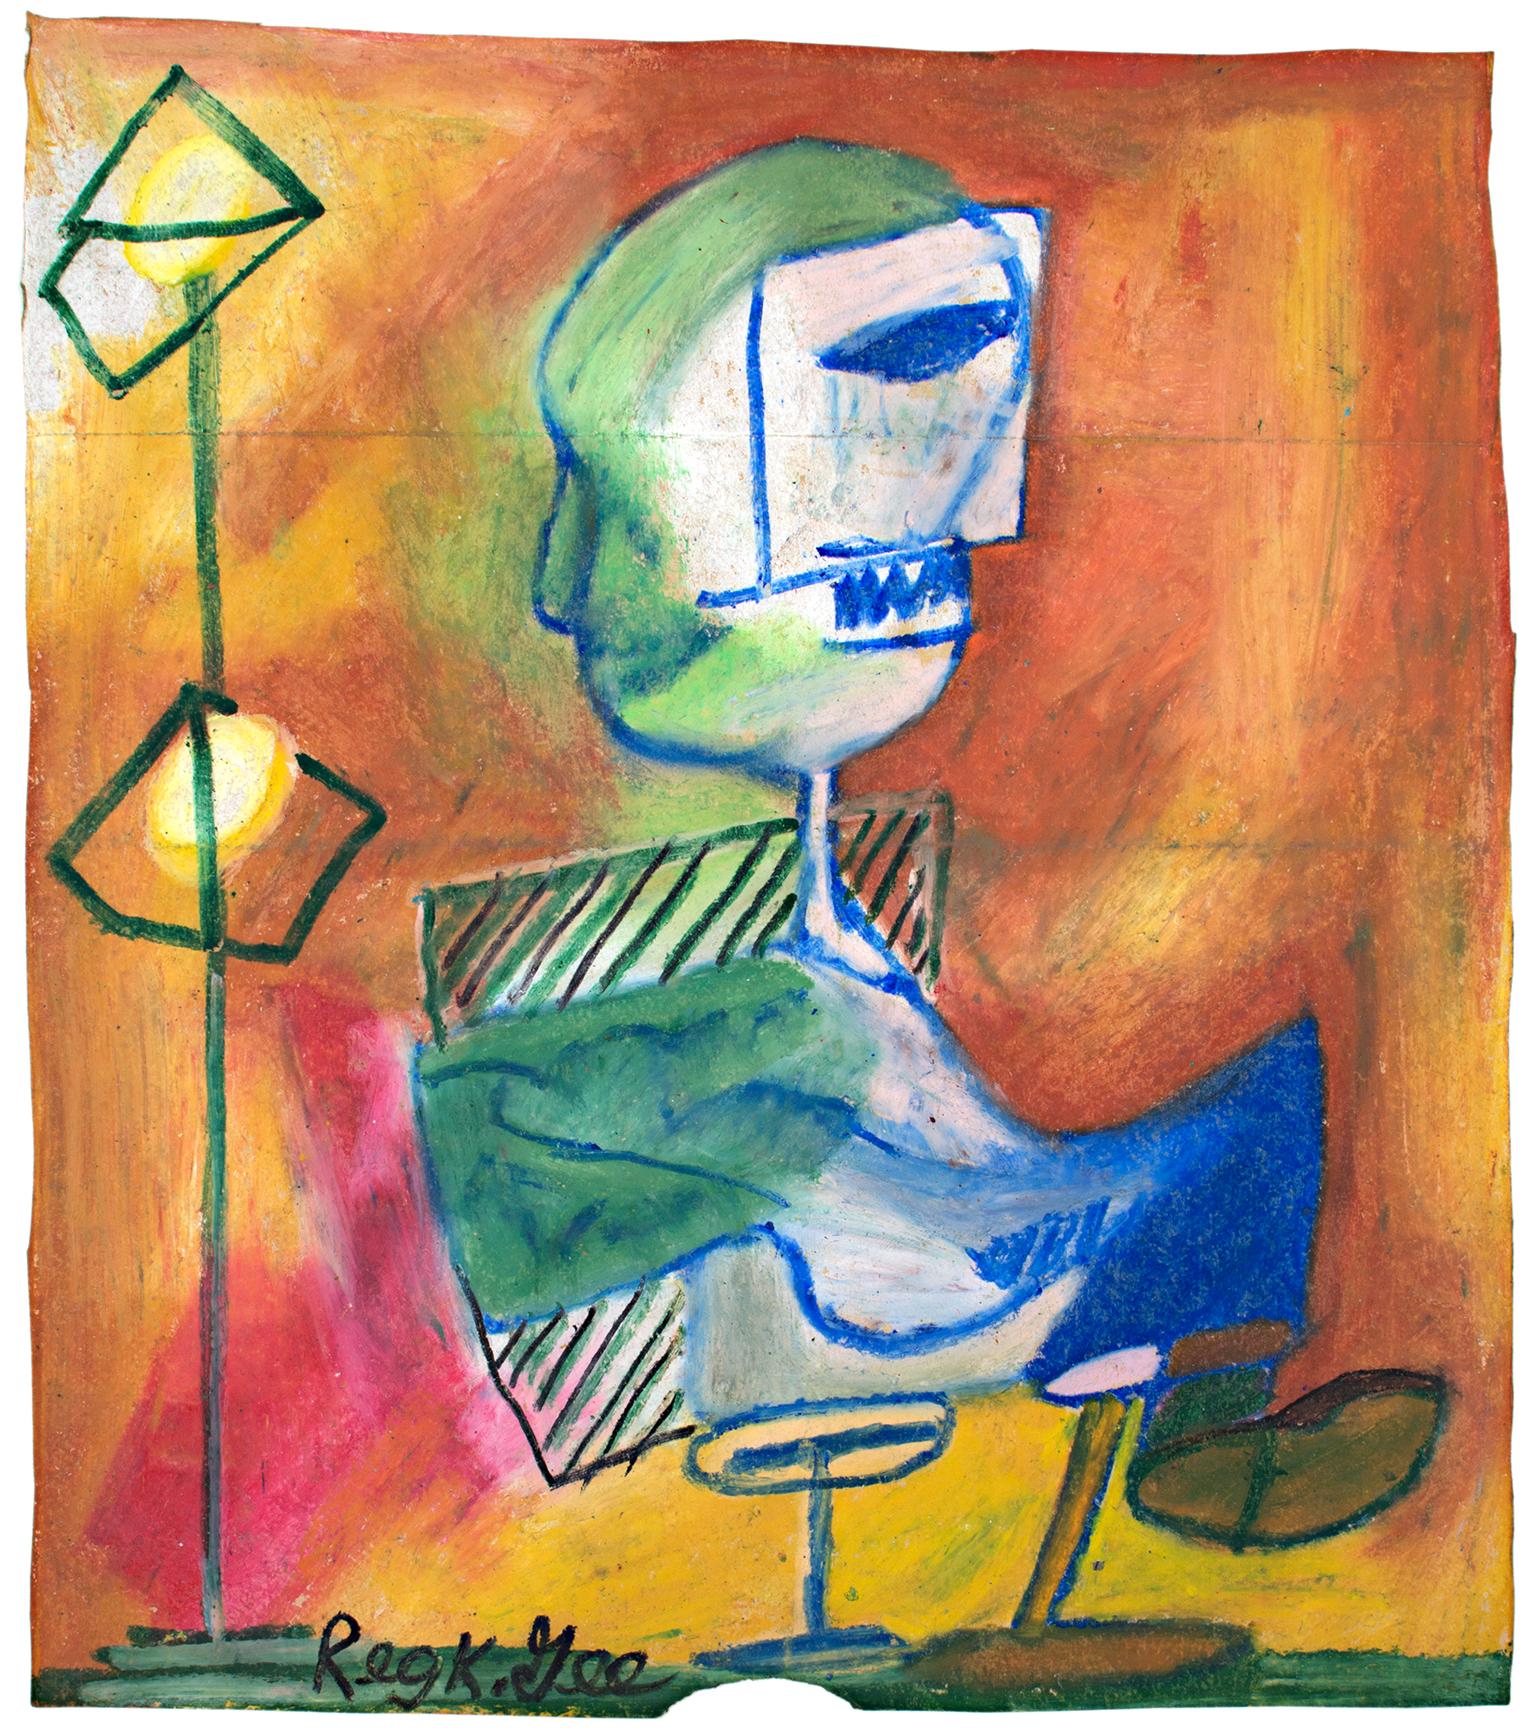 "Seated Figure in Studio" est un dessin original au pastel à l'huile réalisé sur un sac d'épicerie Safeway par Reginald K. Gee. L'artiste a signé l'œuvre en bas à gauche. Il présente une figure abstraite assise dans une pièce chaudement éclairée. Le